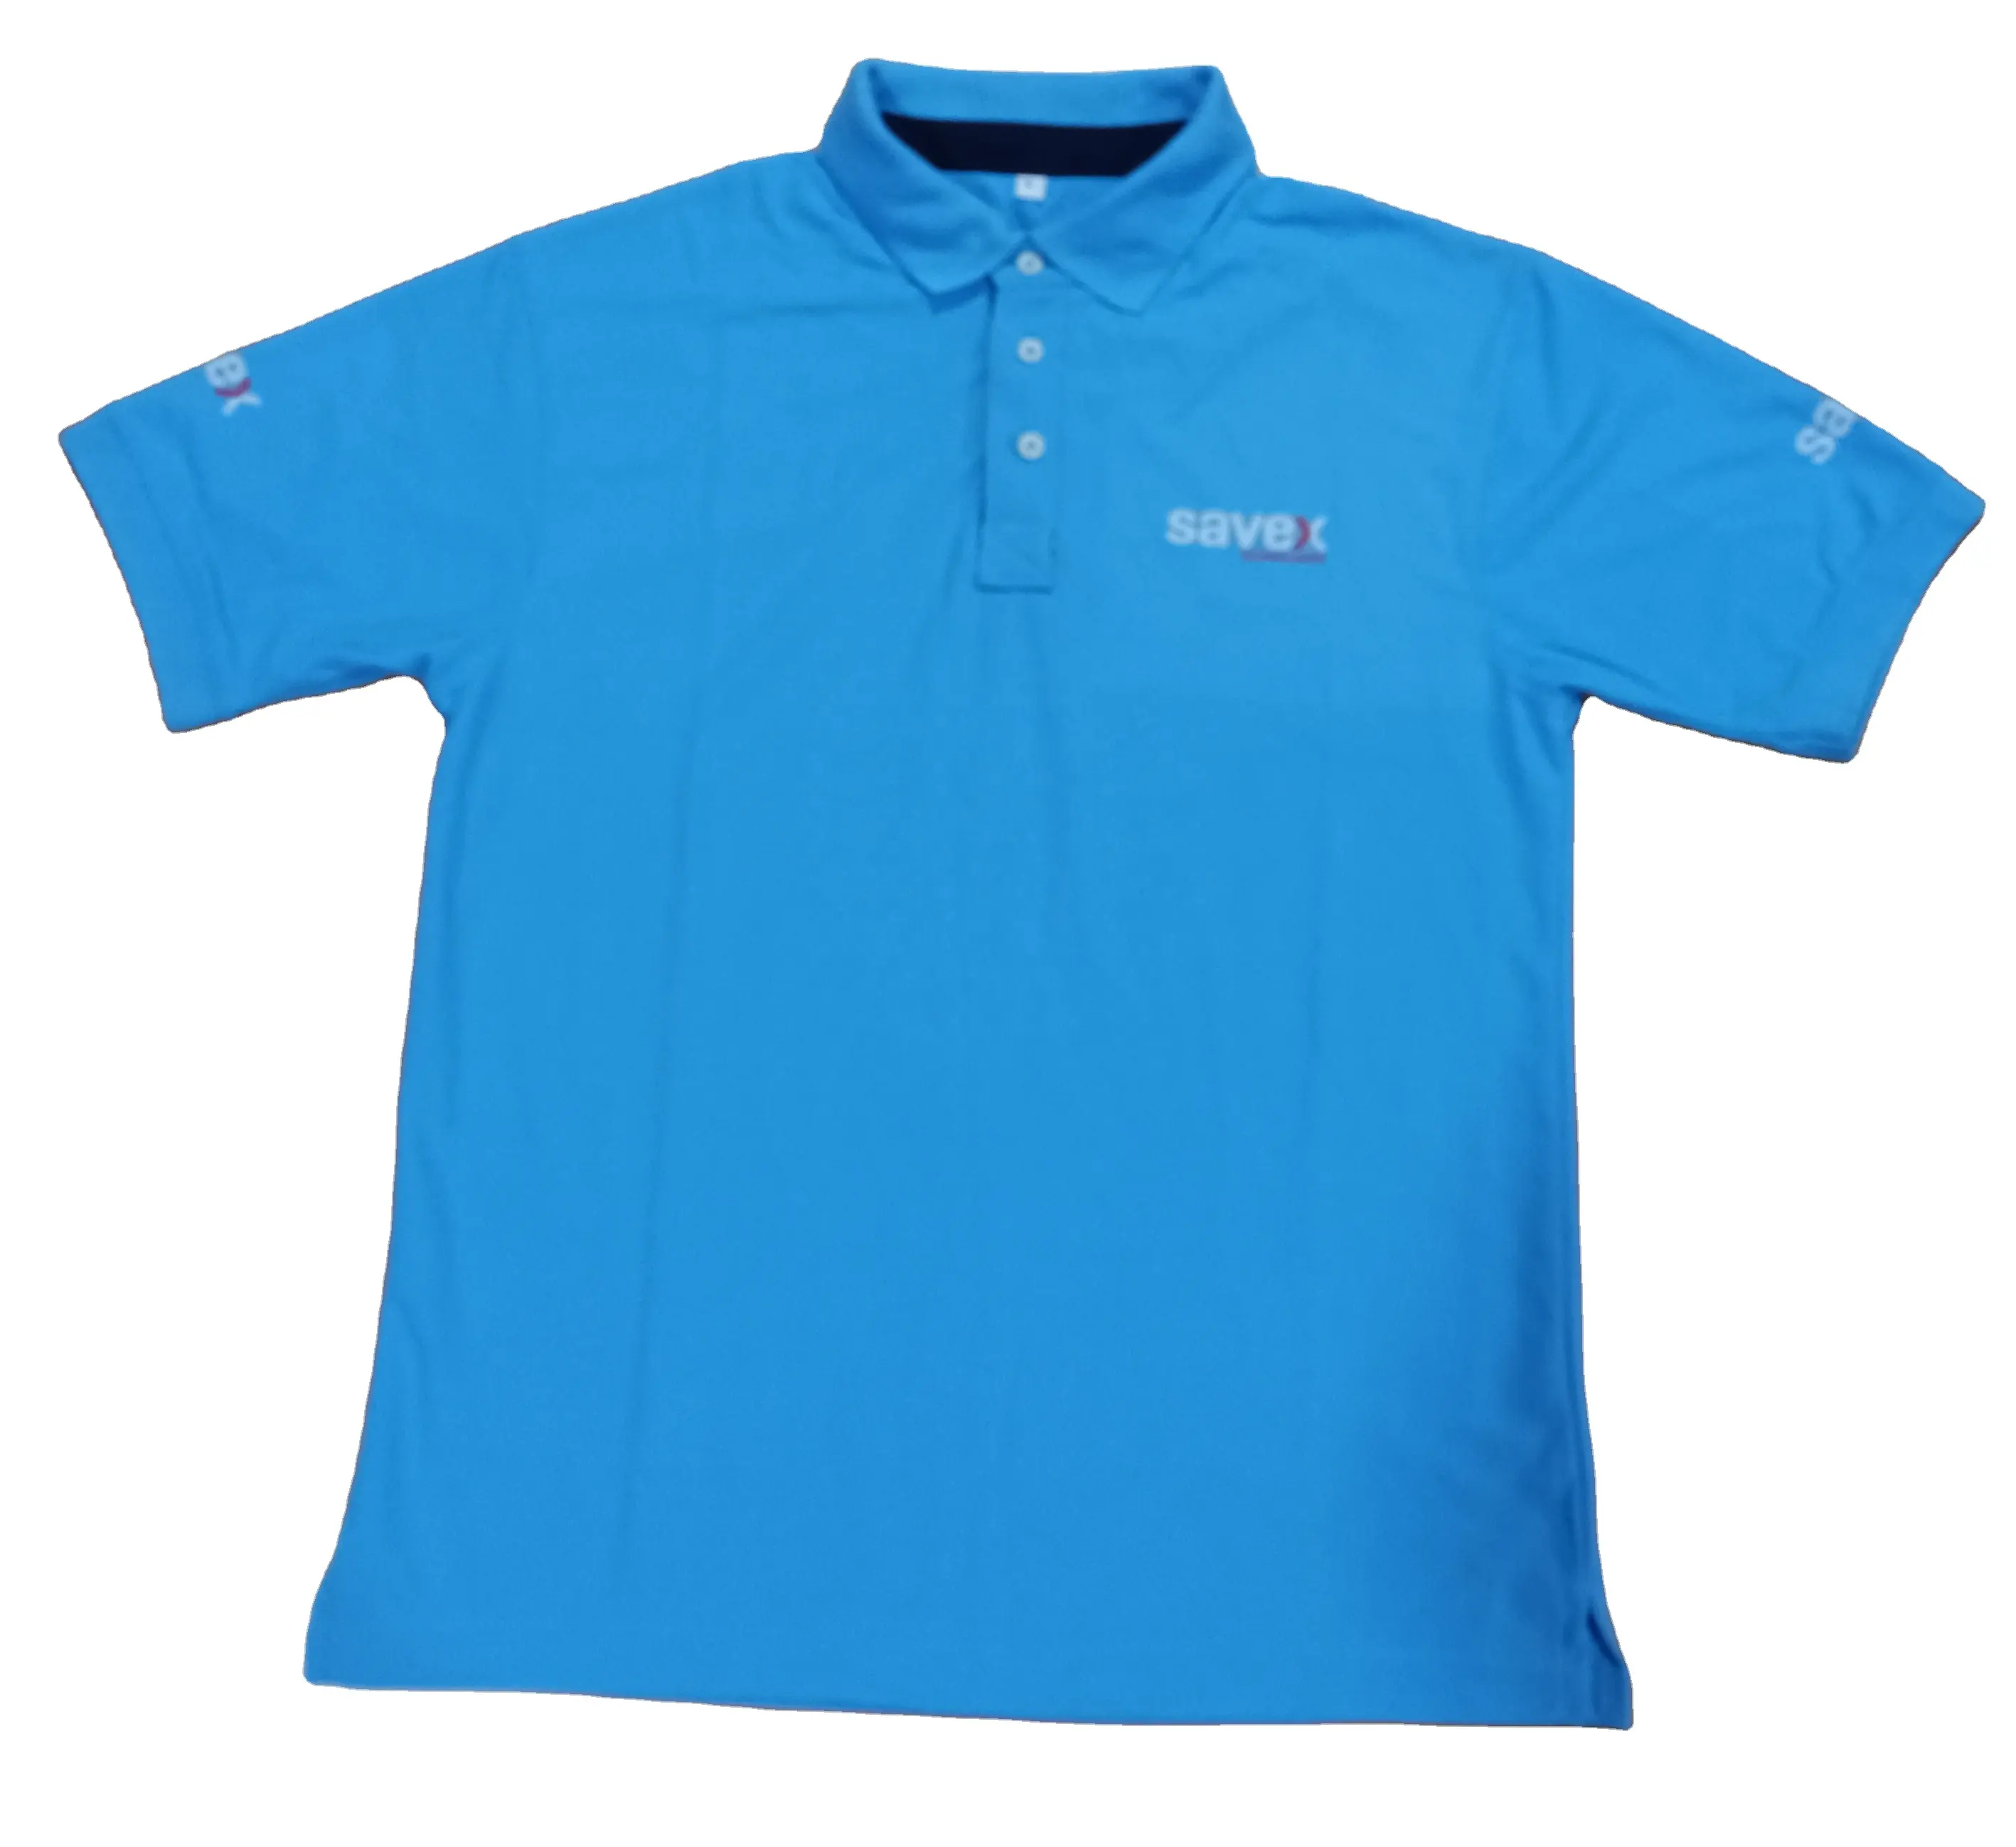 Camiseta 100% poliéster para secagem rápida, 200g, anti-pilling com logotipo personalizado, logotipo da empresa, estampa de bordado, camiseta polo corporativa de golfe